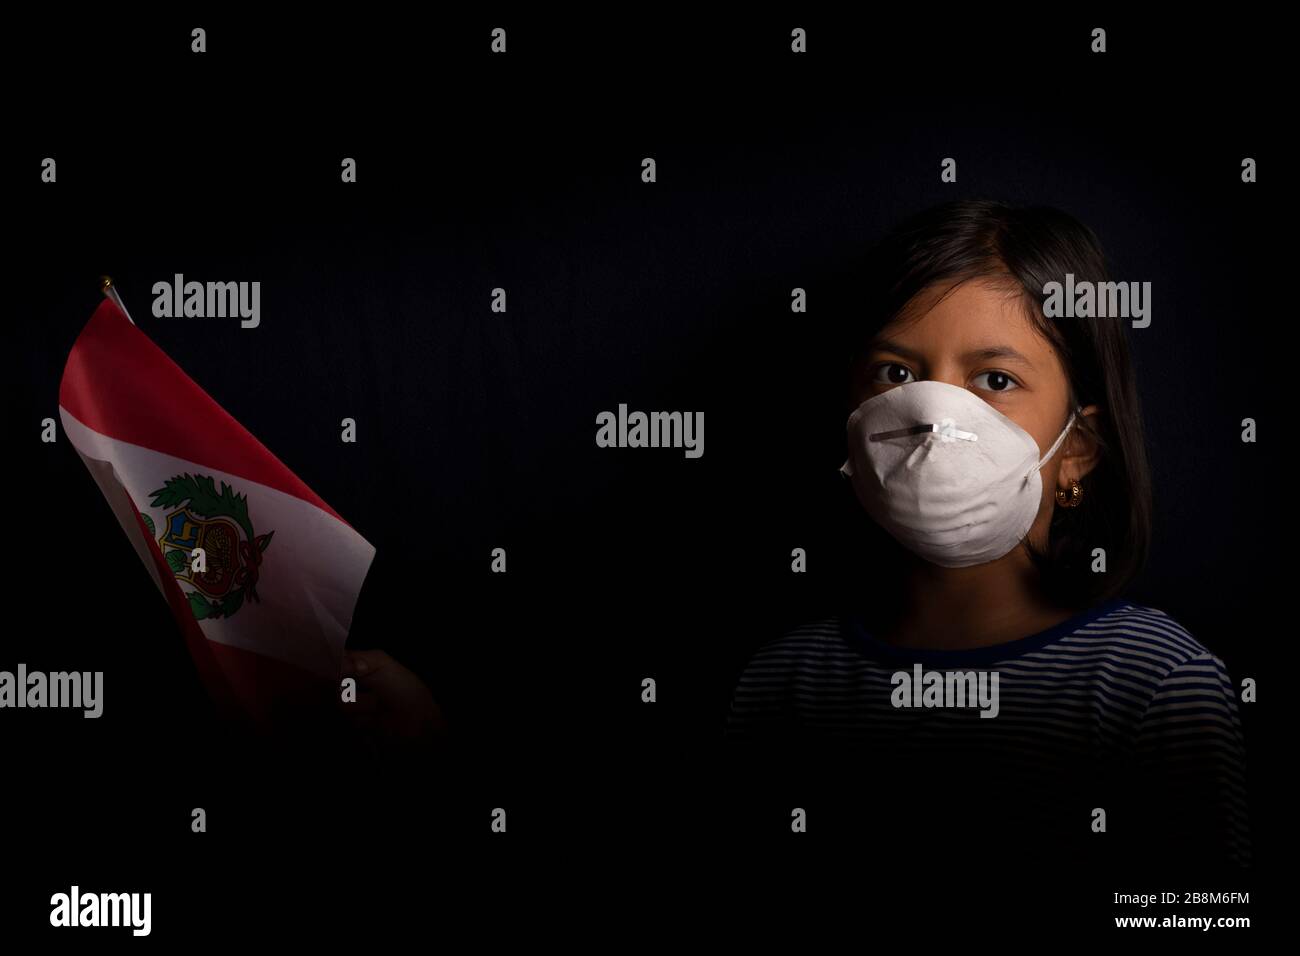 Porträt des kleinen peruanischen Mädchens, das medizinische Maske trägt und hoffentlich die Flagge Perus hält Stockfoto